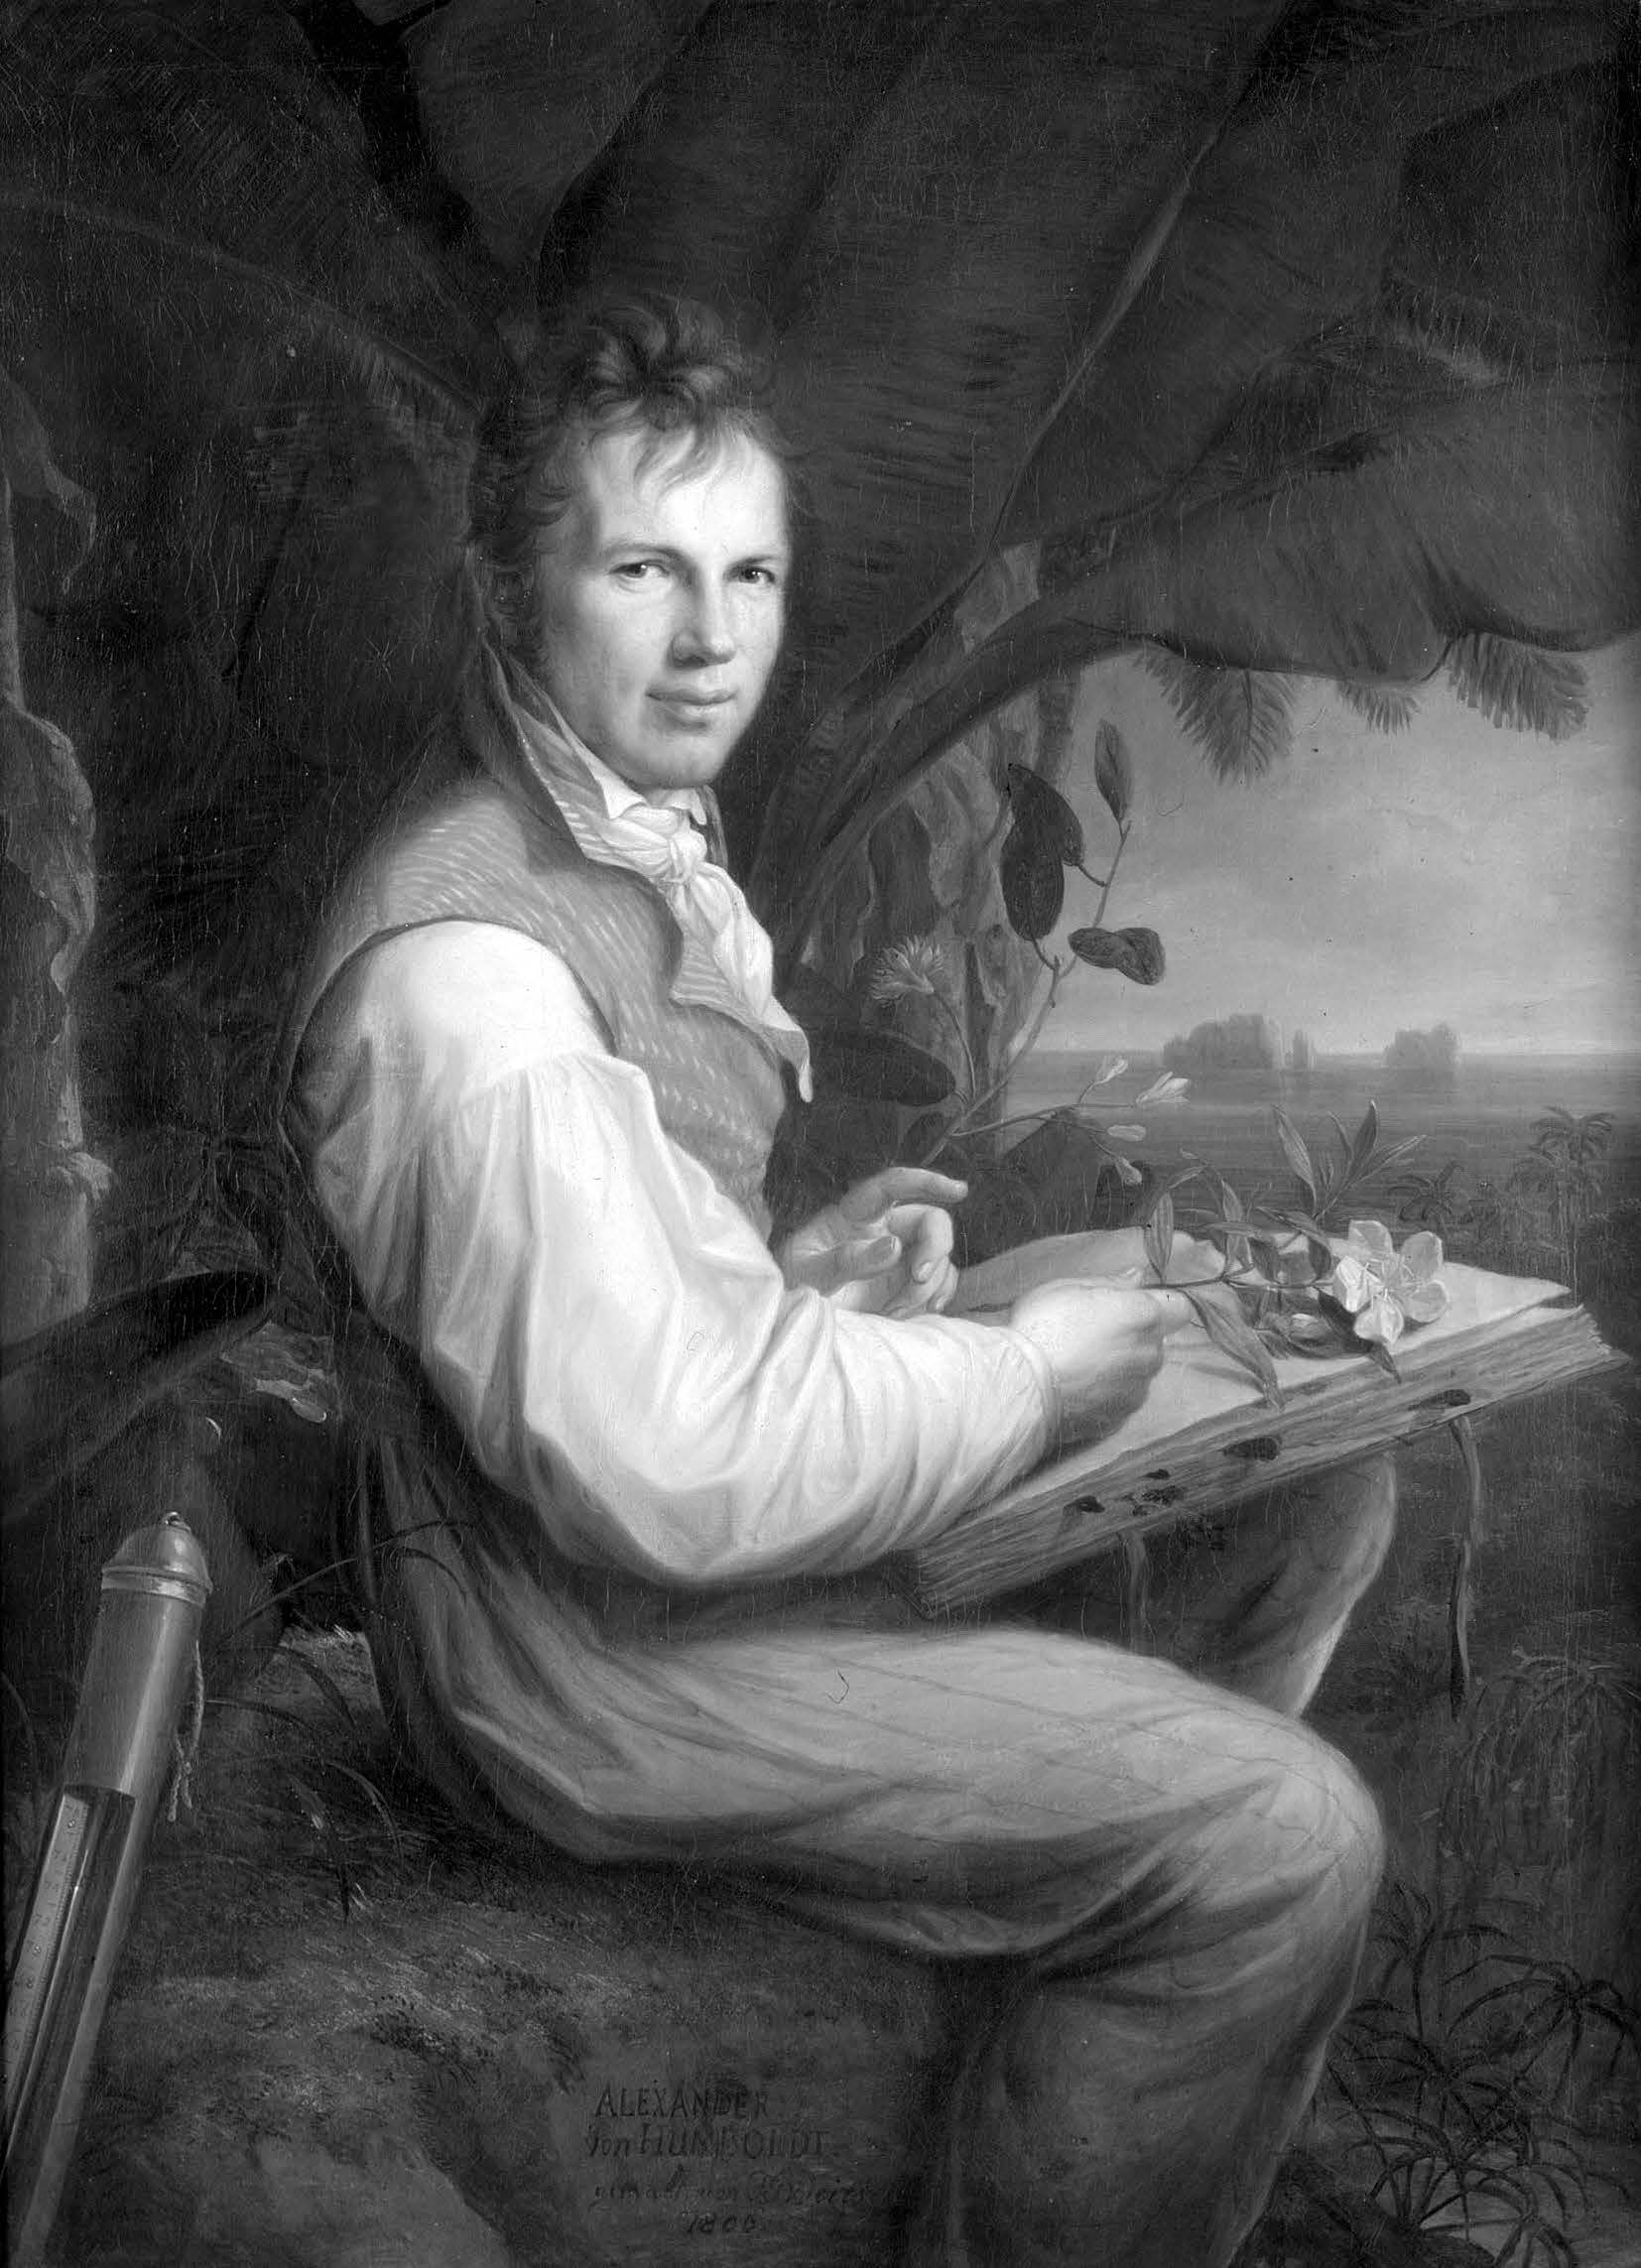 Portrait of Alexander von Humboldt, by Friedrich Georg Weitsch.